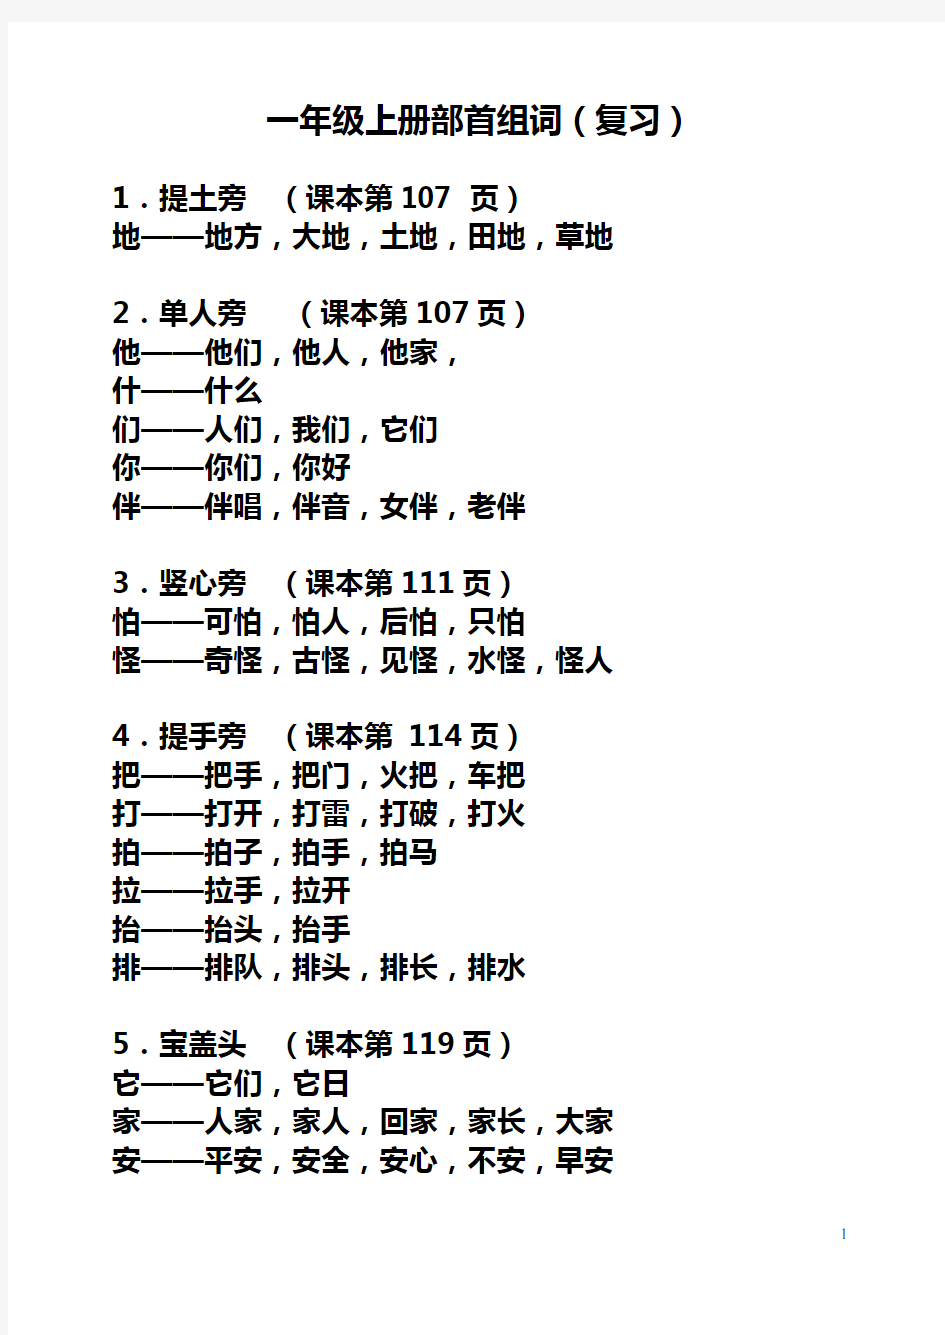 上海市实验学校一年级语文(上册)全部部首组词(复习) (练习)